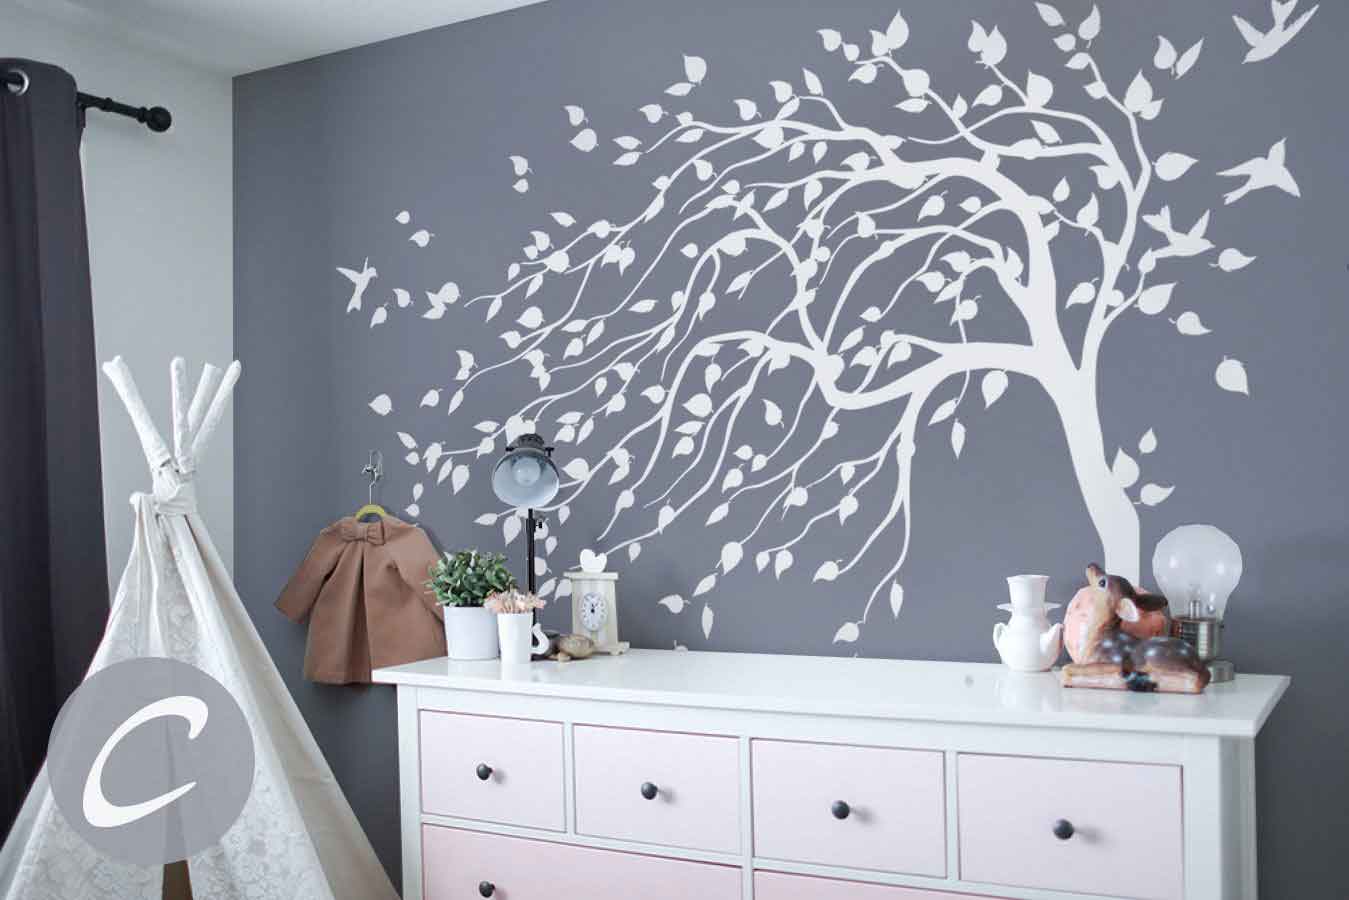 Vẽ tranh tường cái cây - Cây màu trắng trên tường đen